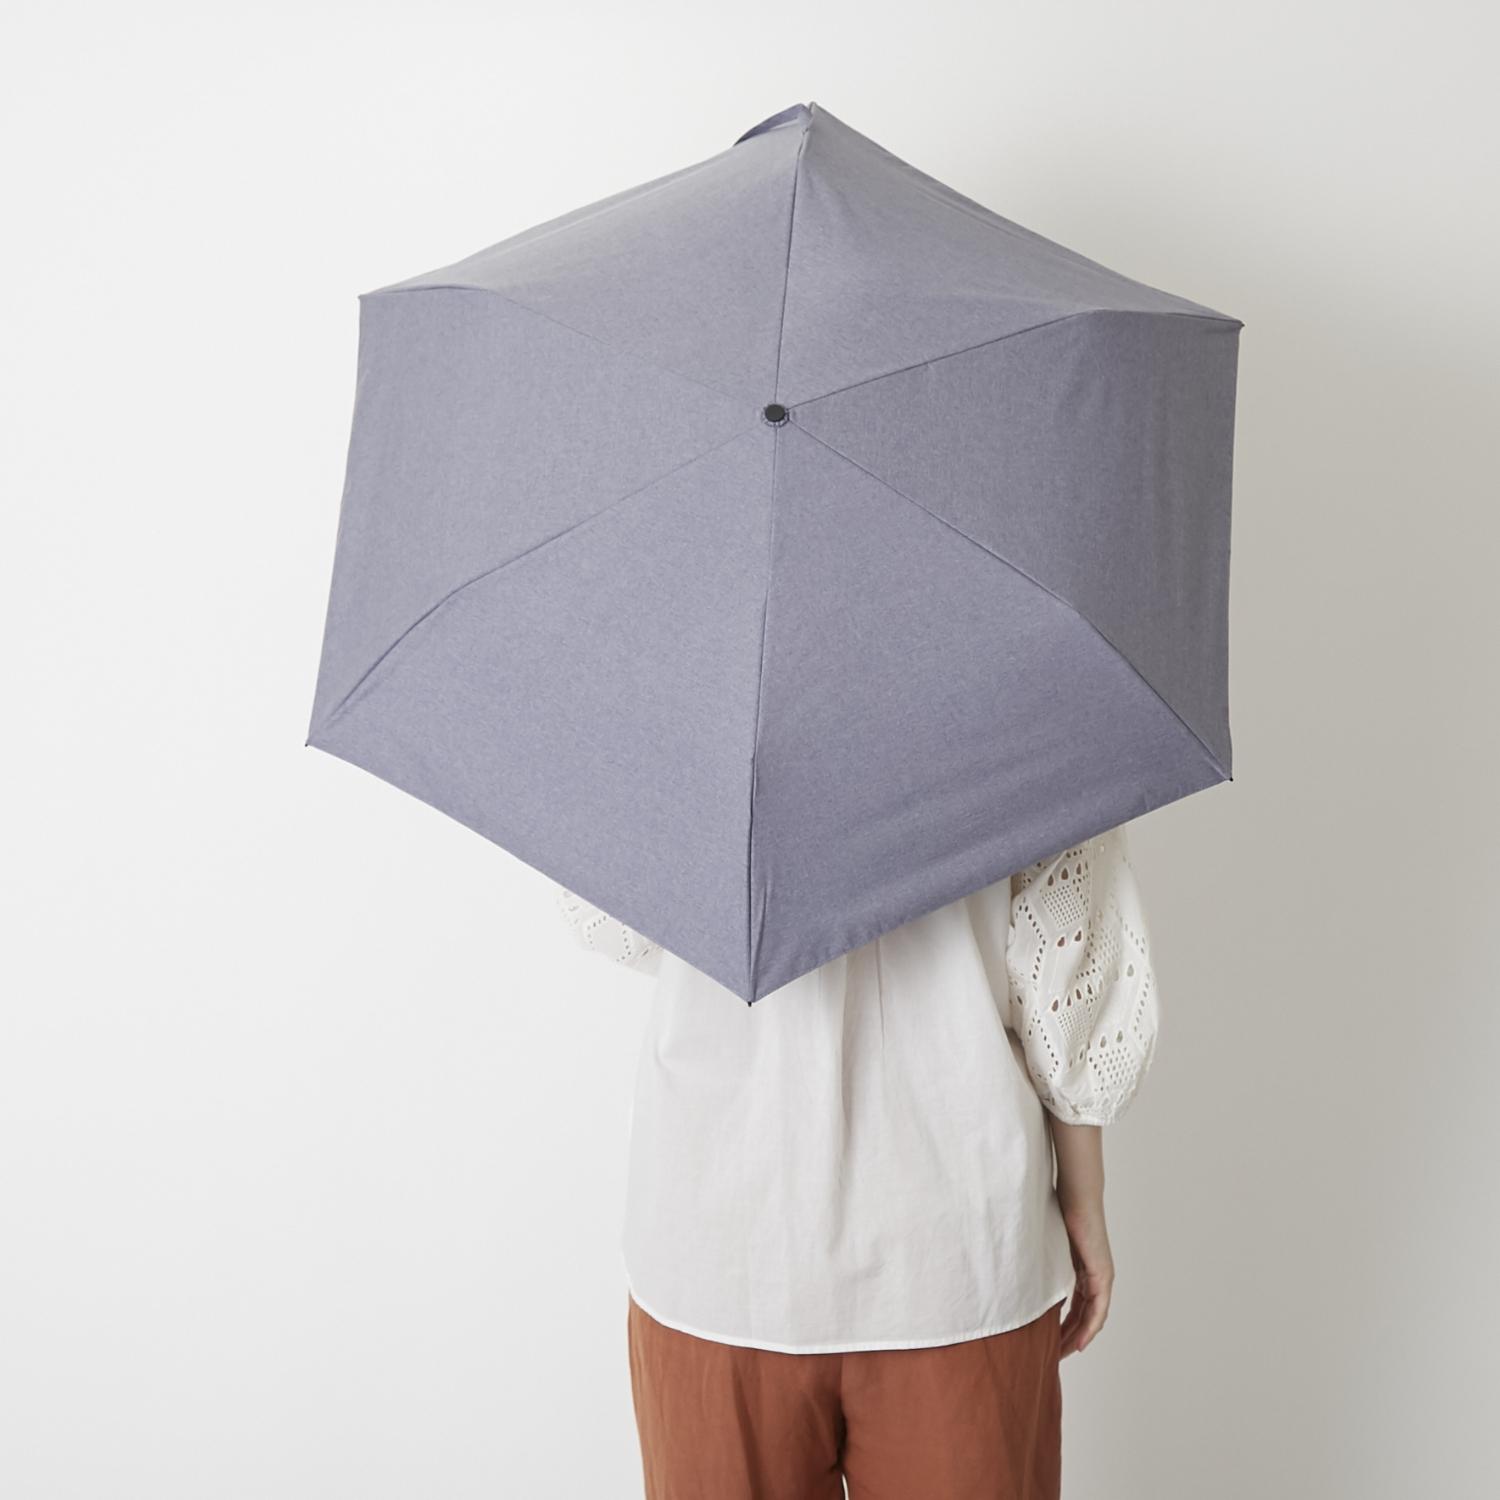 折りたたみ楽々 紫外線99.9%ブロックの晴雨兼用傘 売買 ショップ HEAT BLOCK ブルー シャンブレー 軽量折りたたみ傘